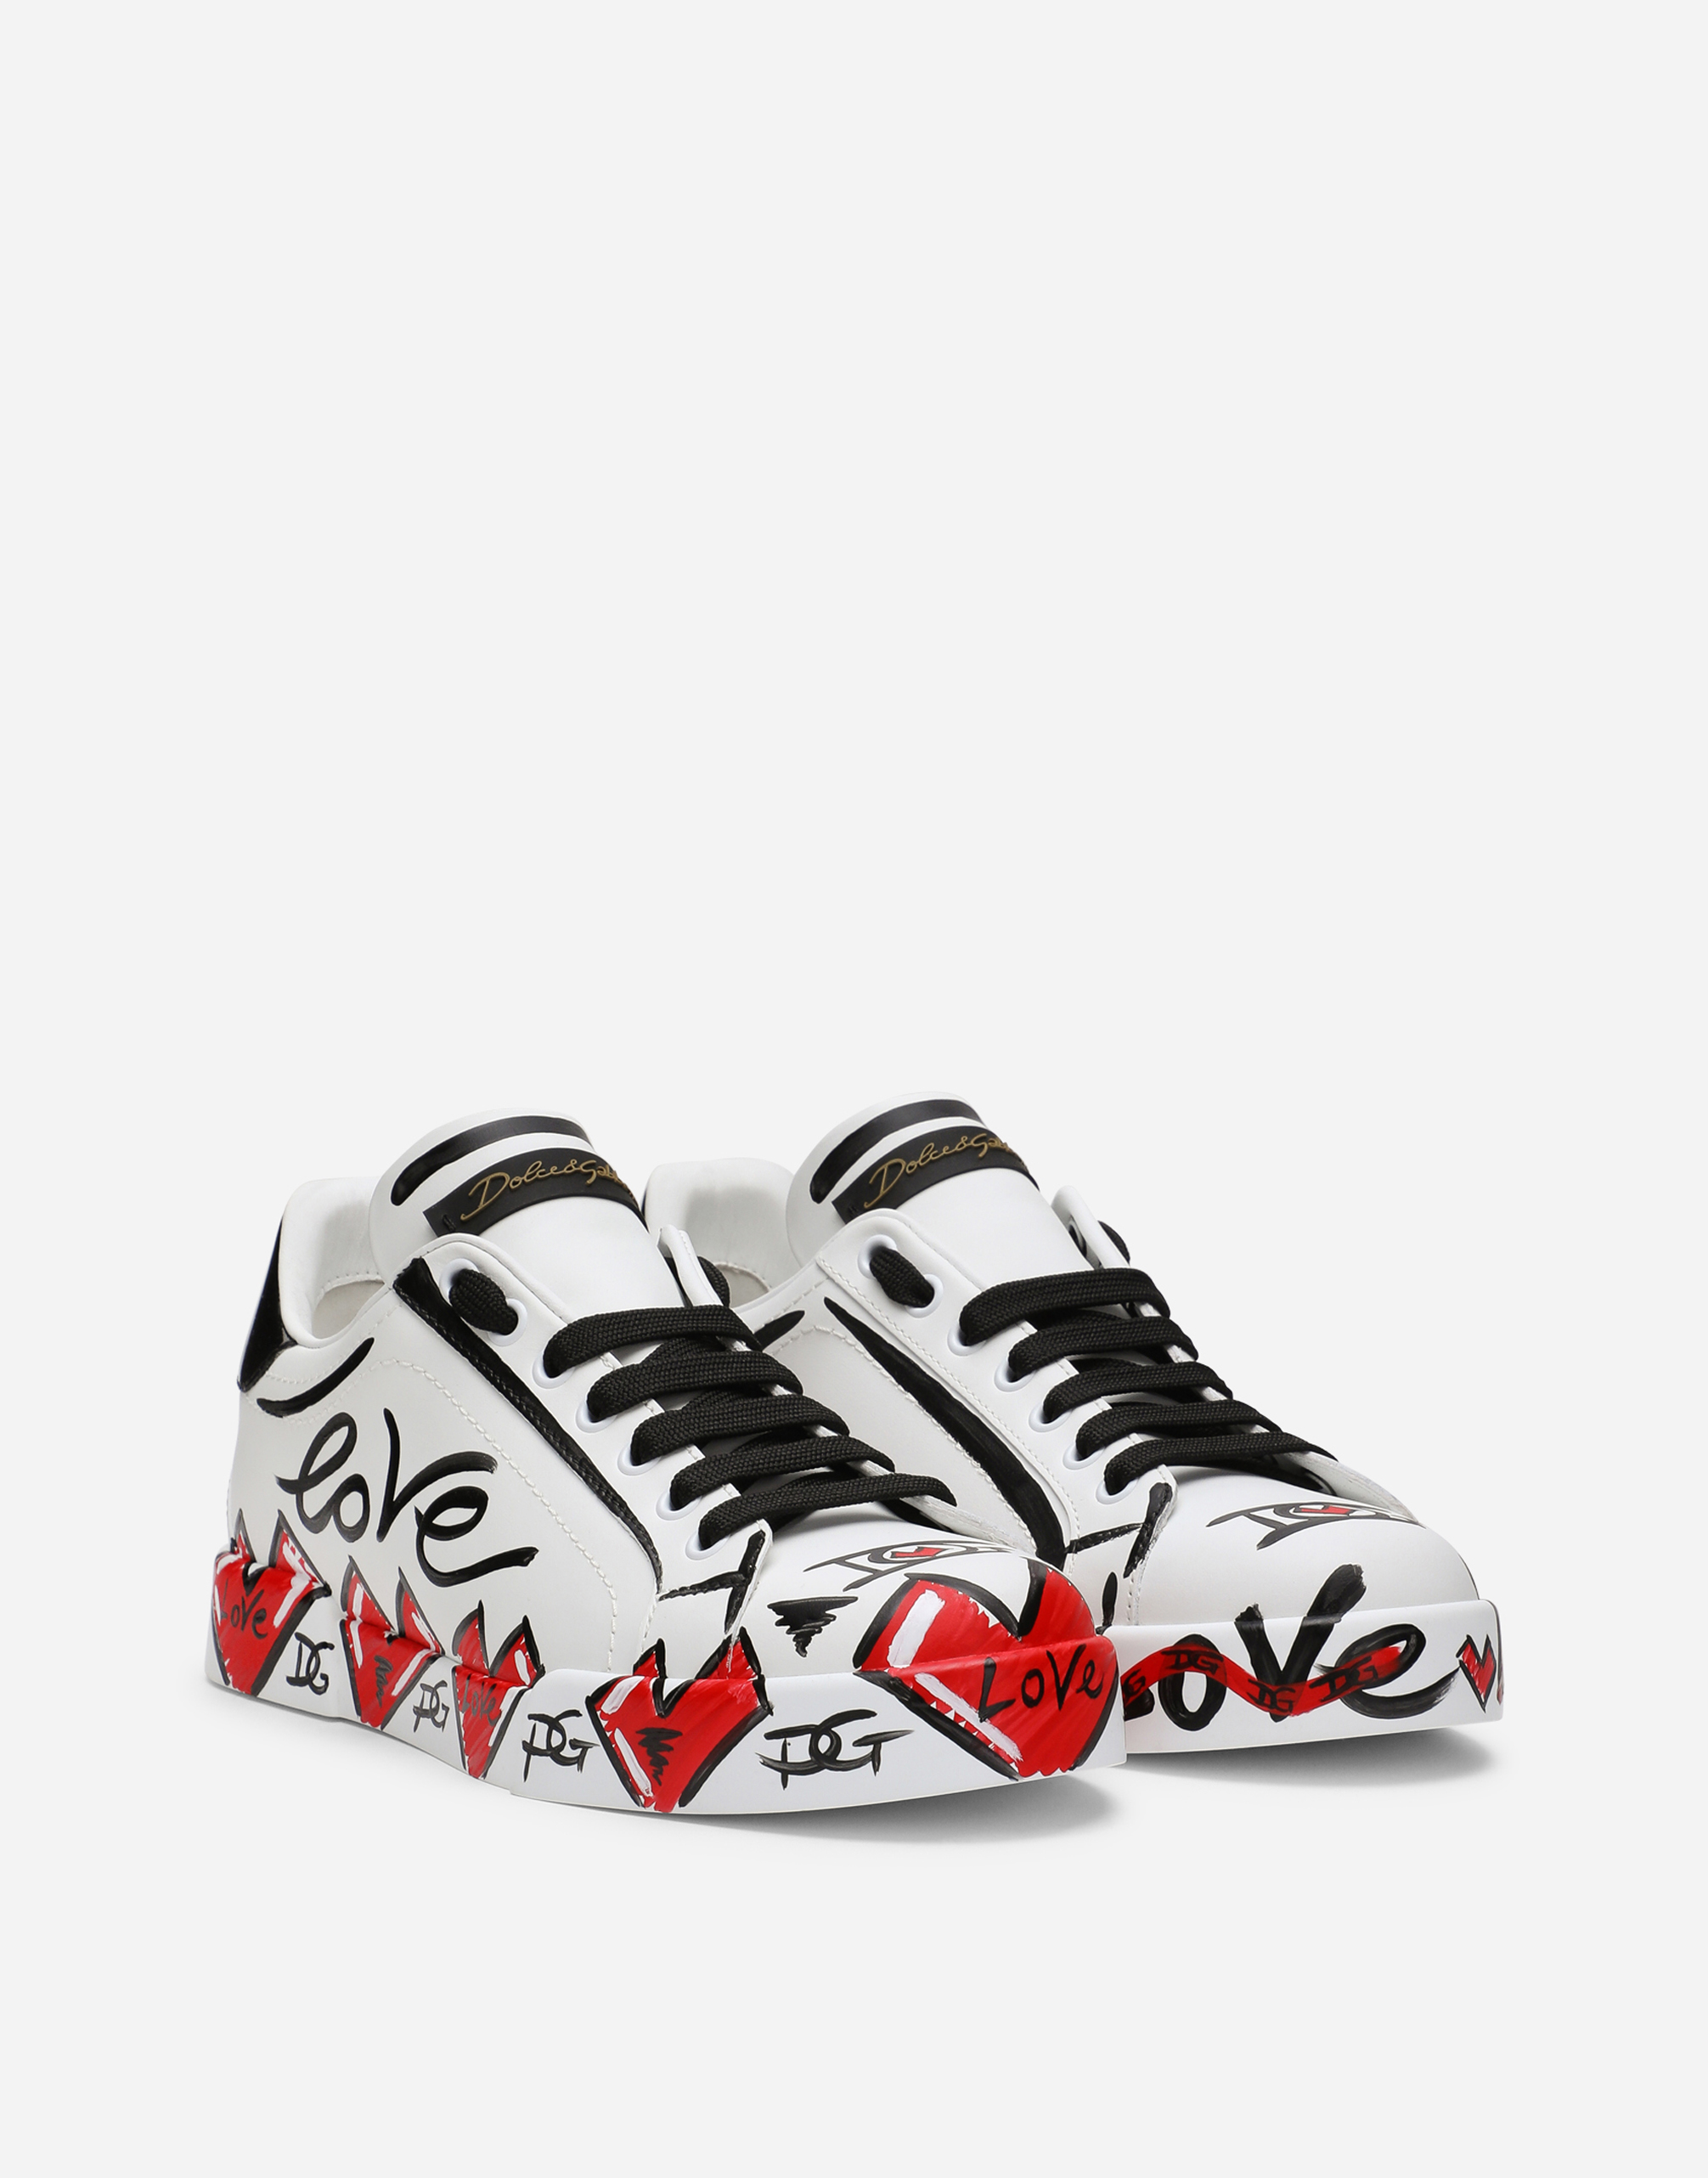 Limited Edition Valentine’s Day Portofino Sneakers 2